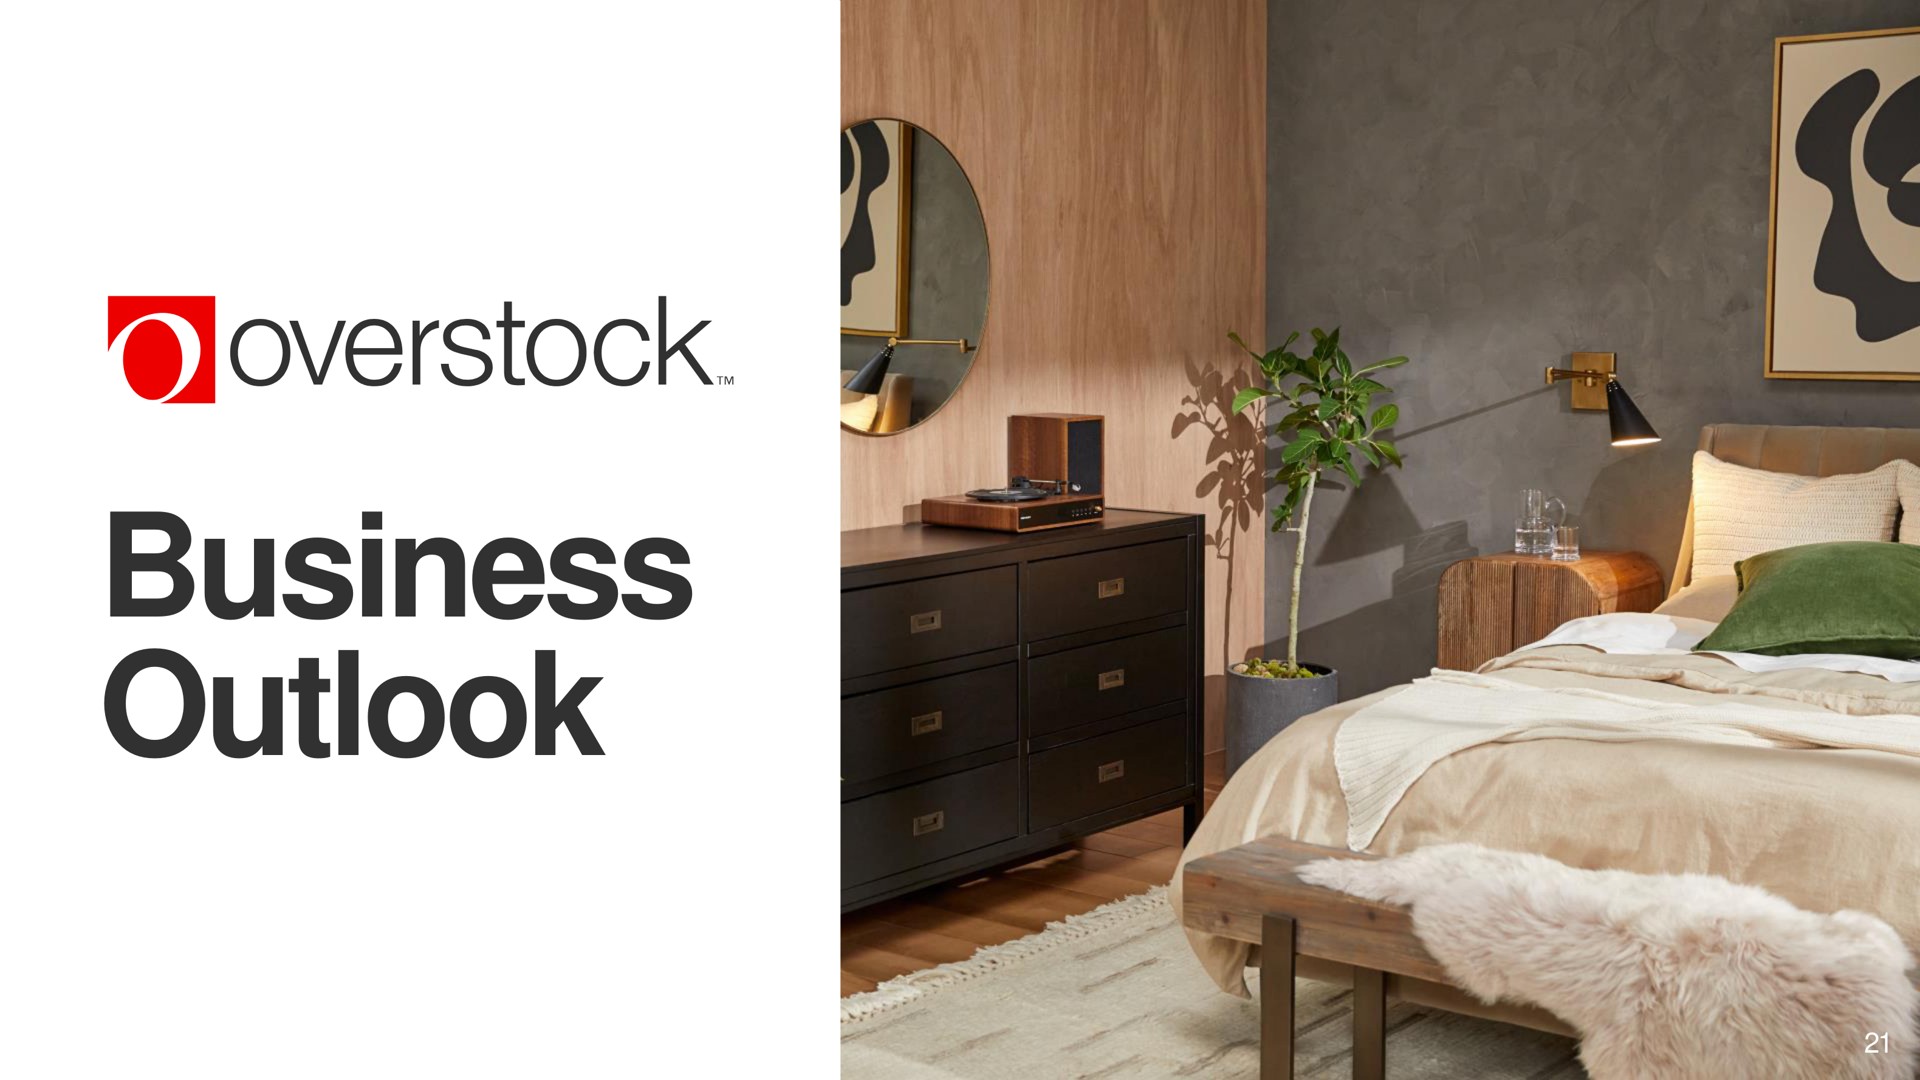 business outlook overstock | Overstock